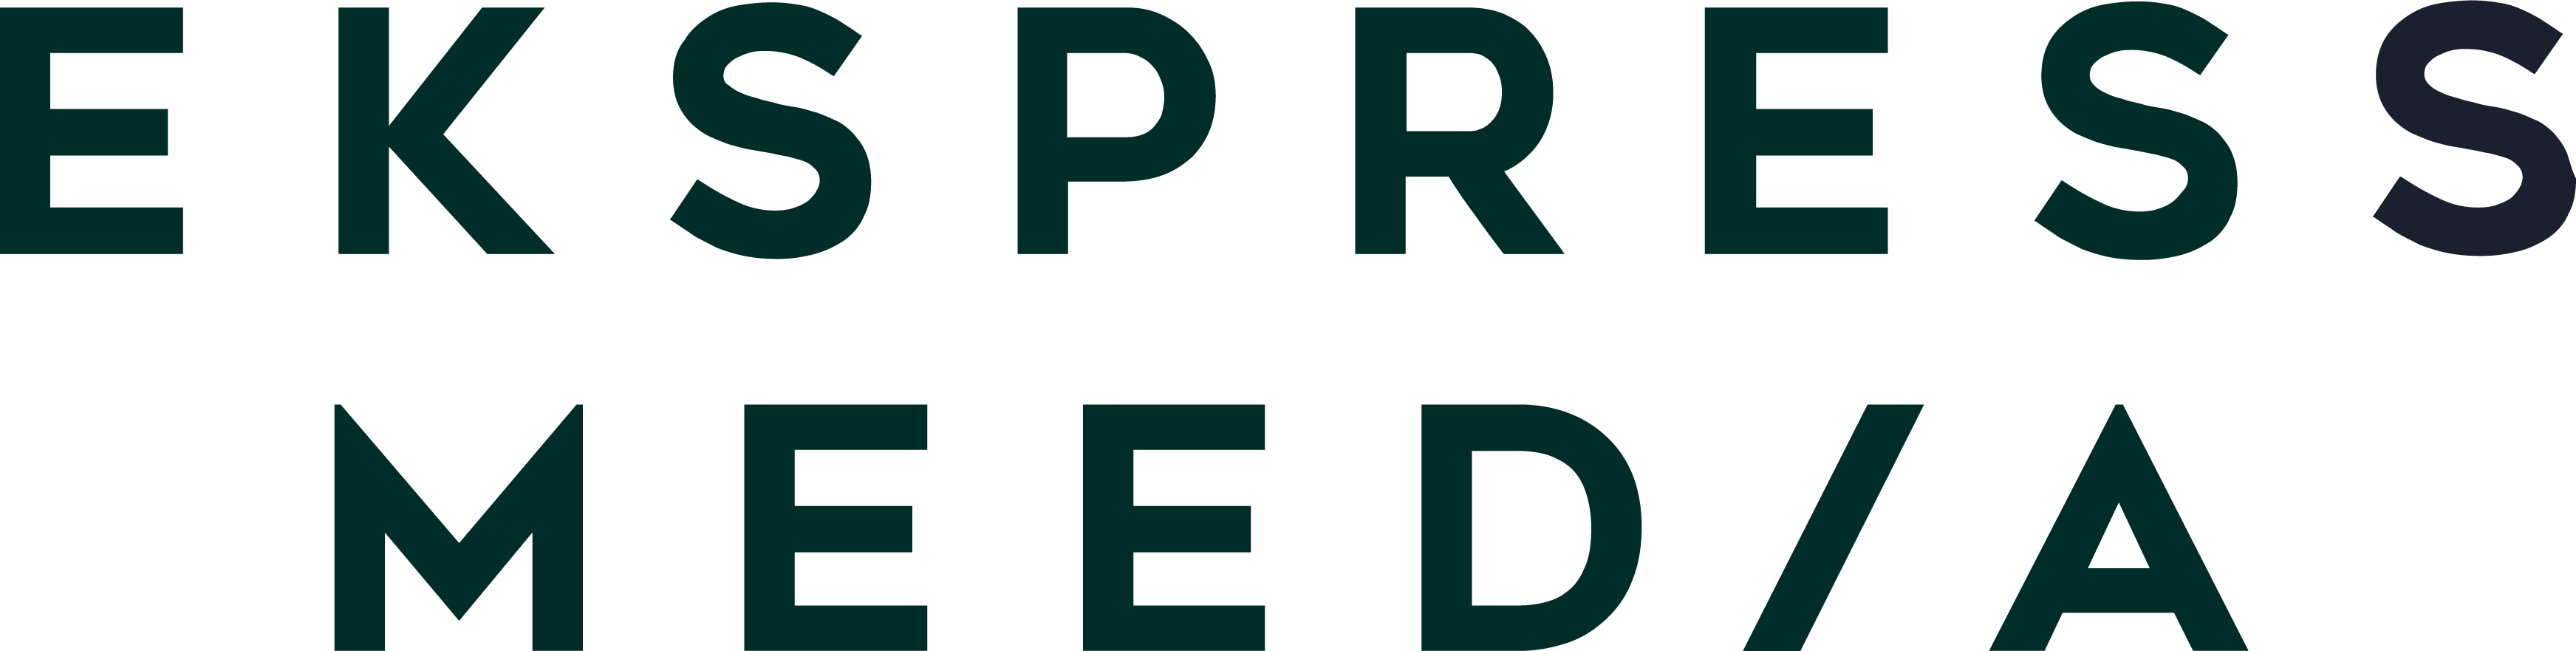 Ekspress media logo